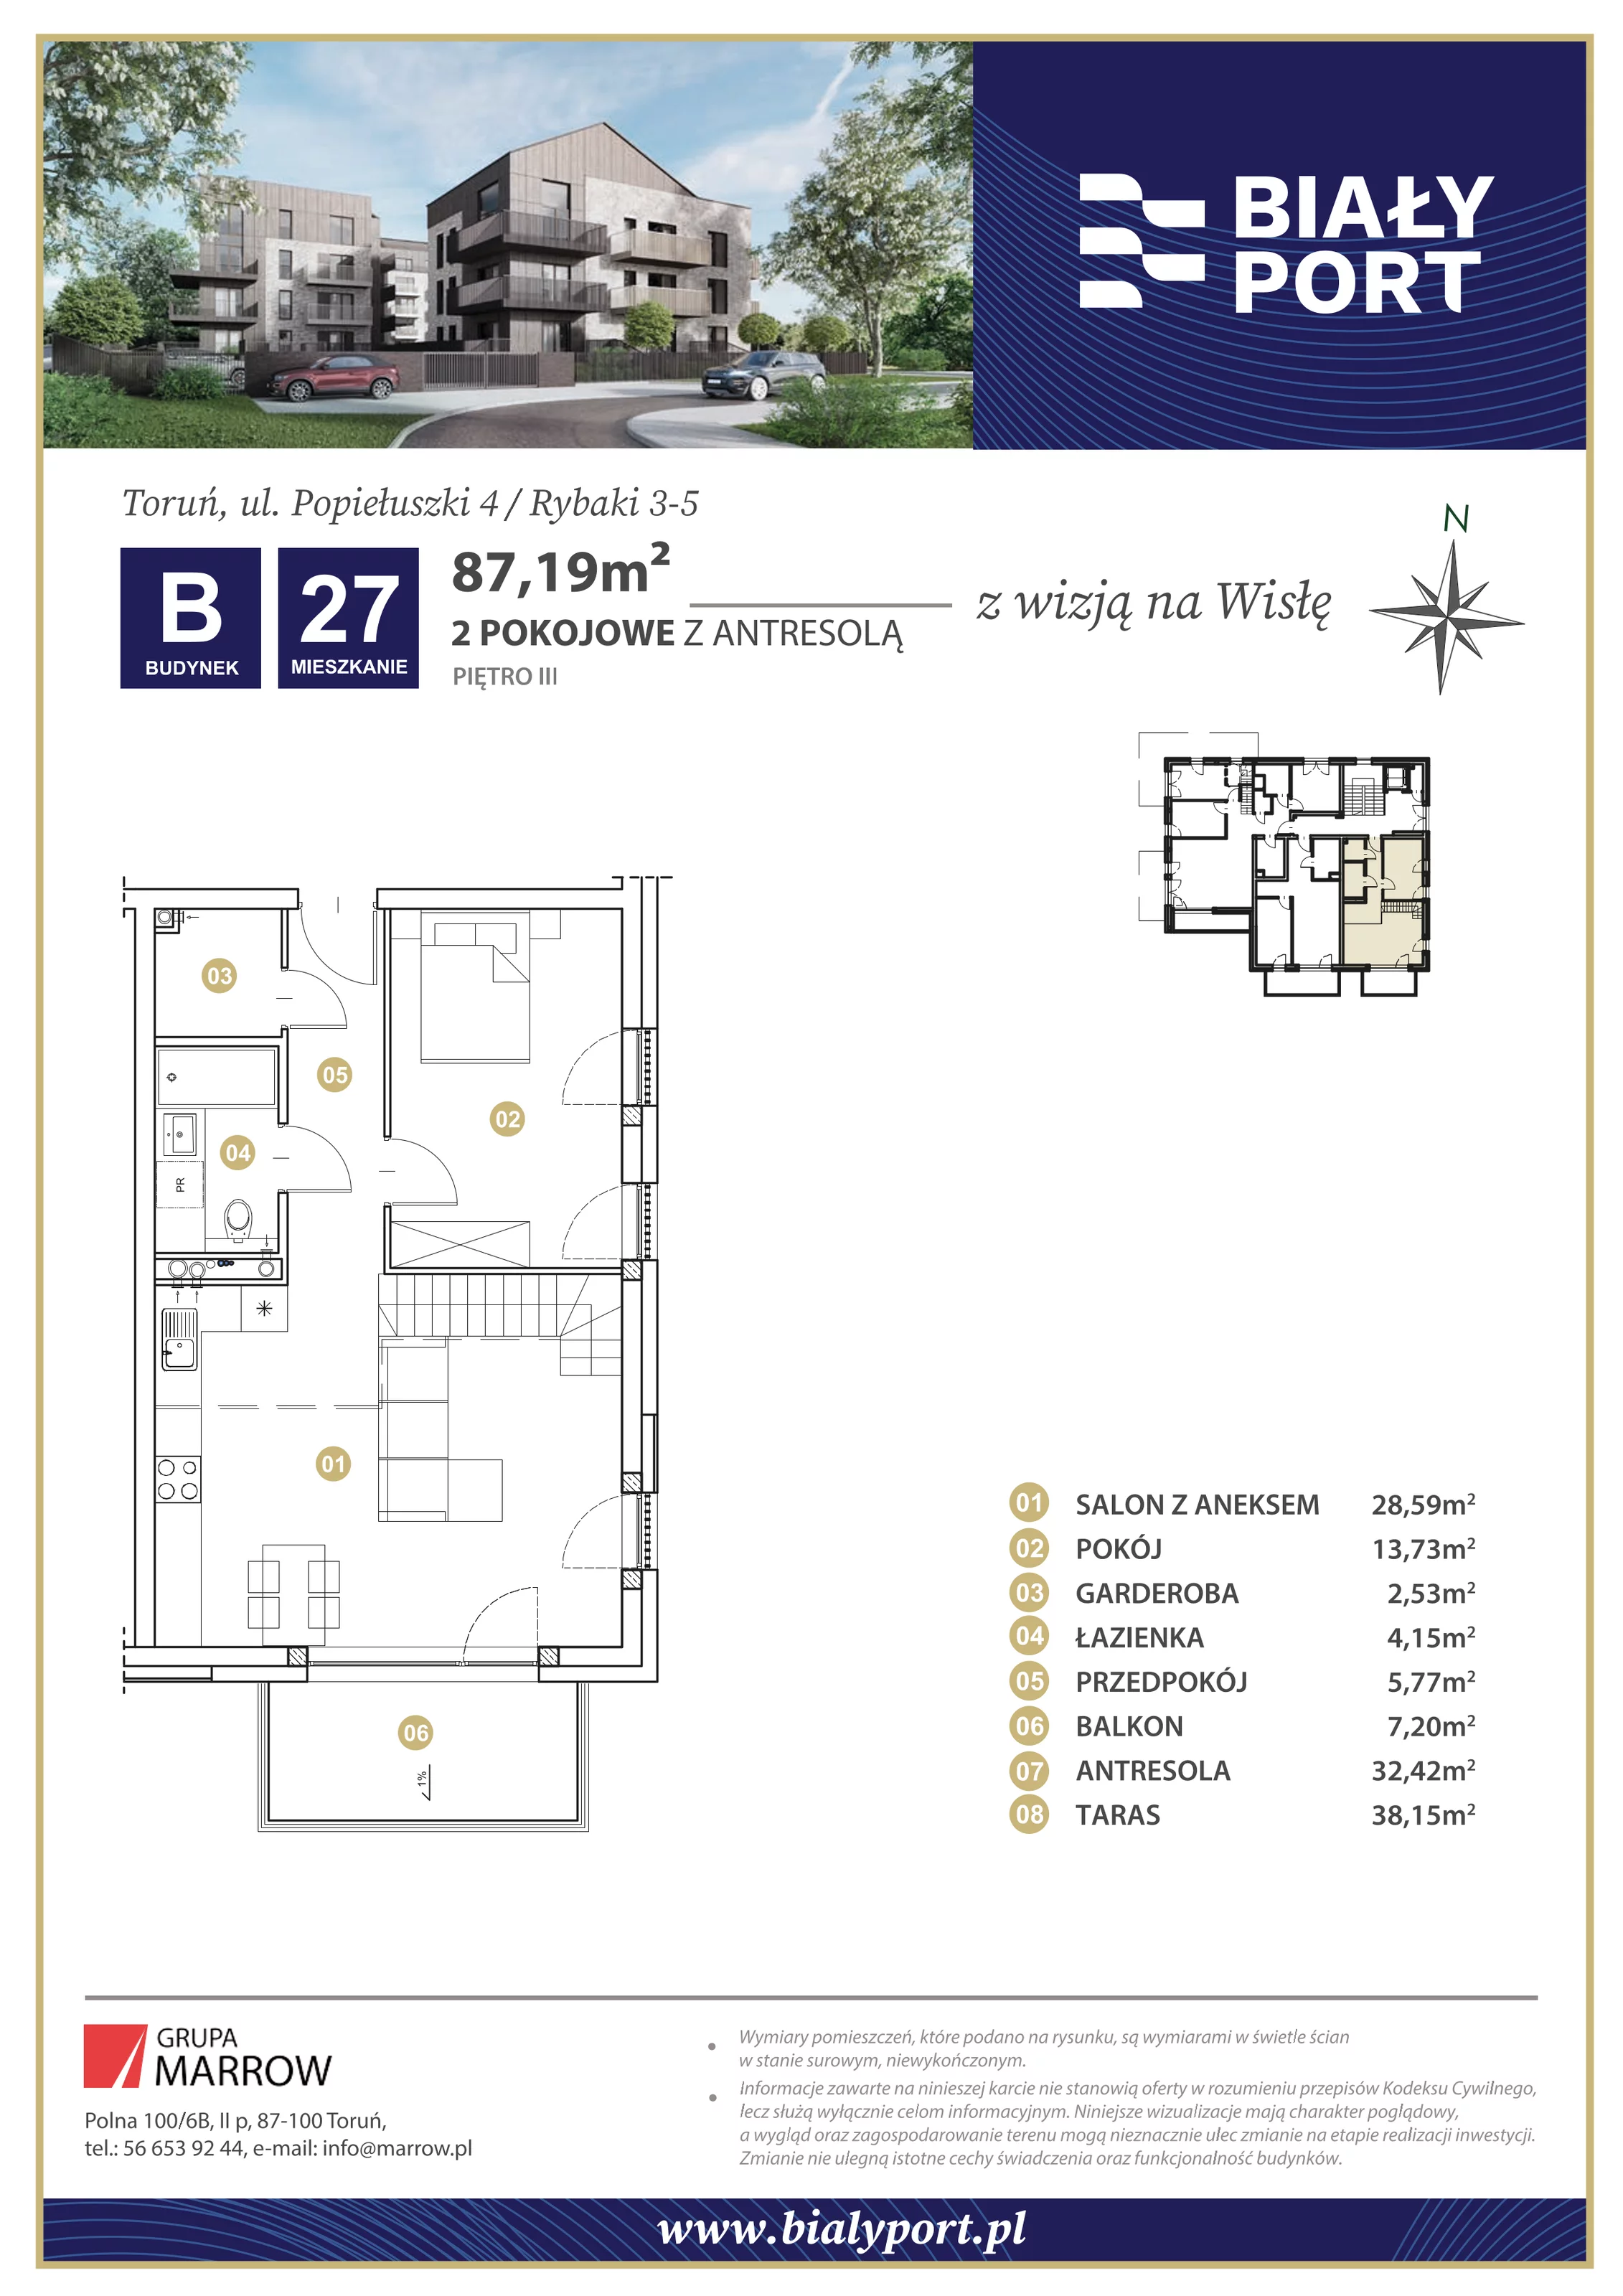 Mieszkanie 87,19 m², piętro 3, oferta nr 27, Biały Port, Toruń, Rybaki, ul. Popiełuszki 4